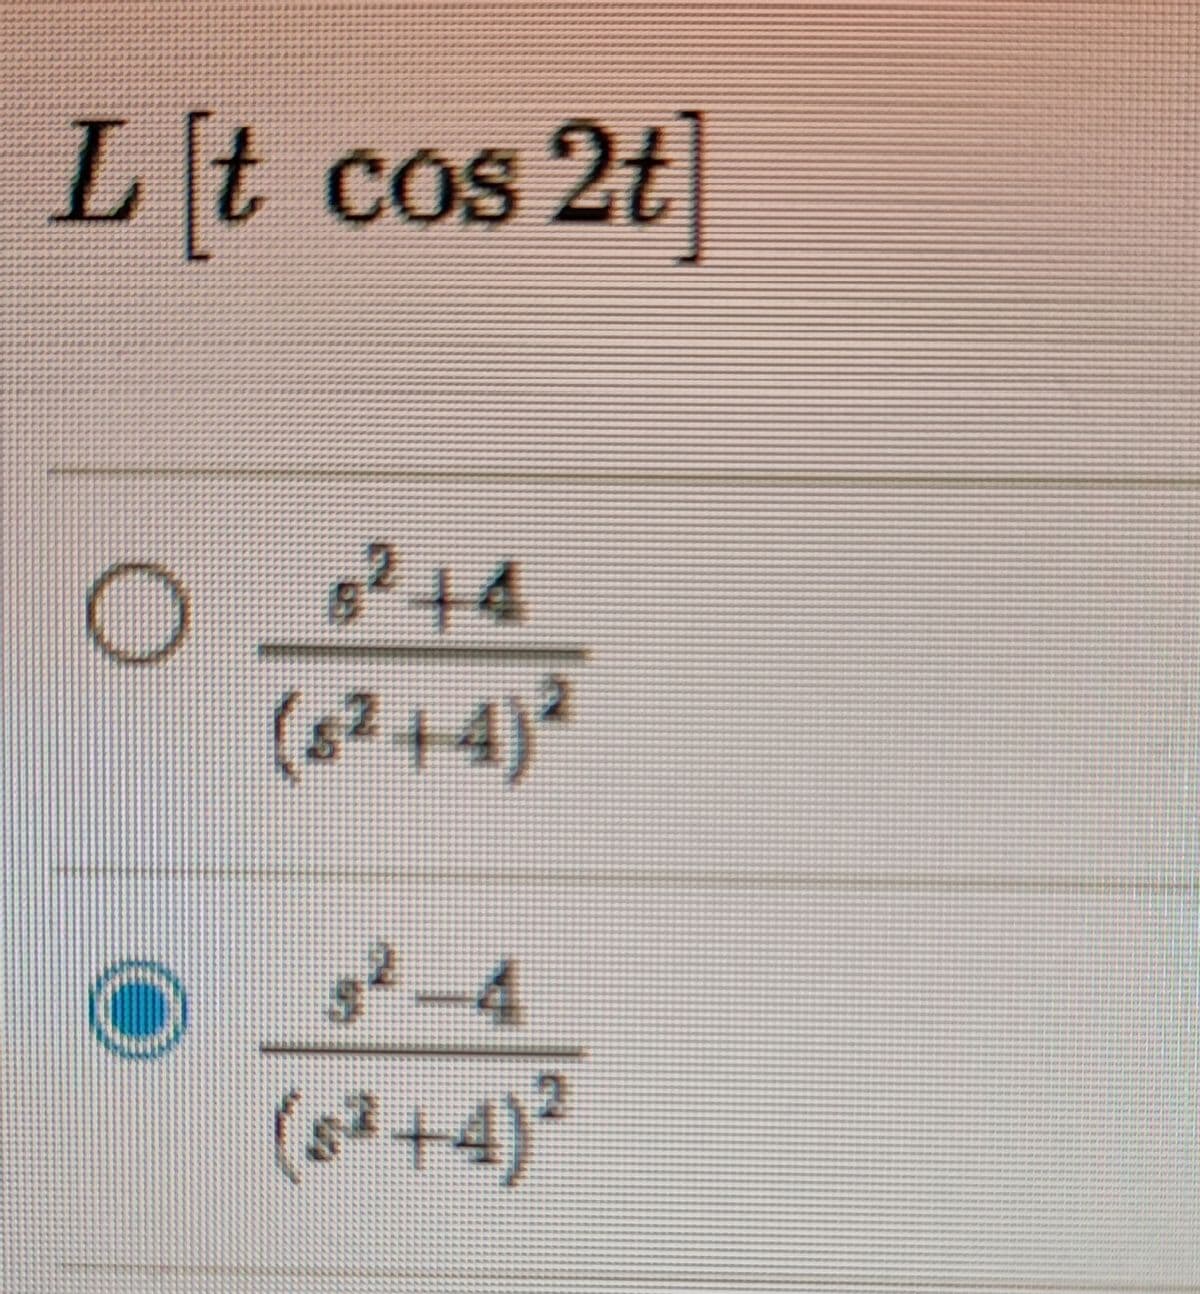 [t
cos 2t
714
(8?+4)?
-4
(s²+4)²
